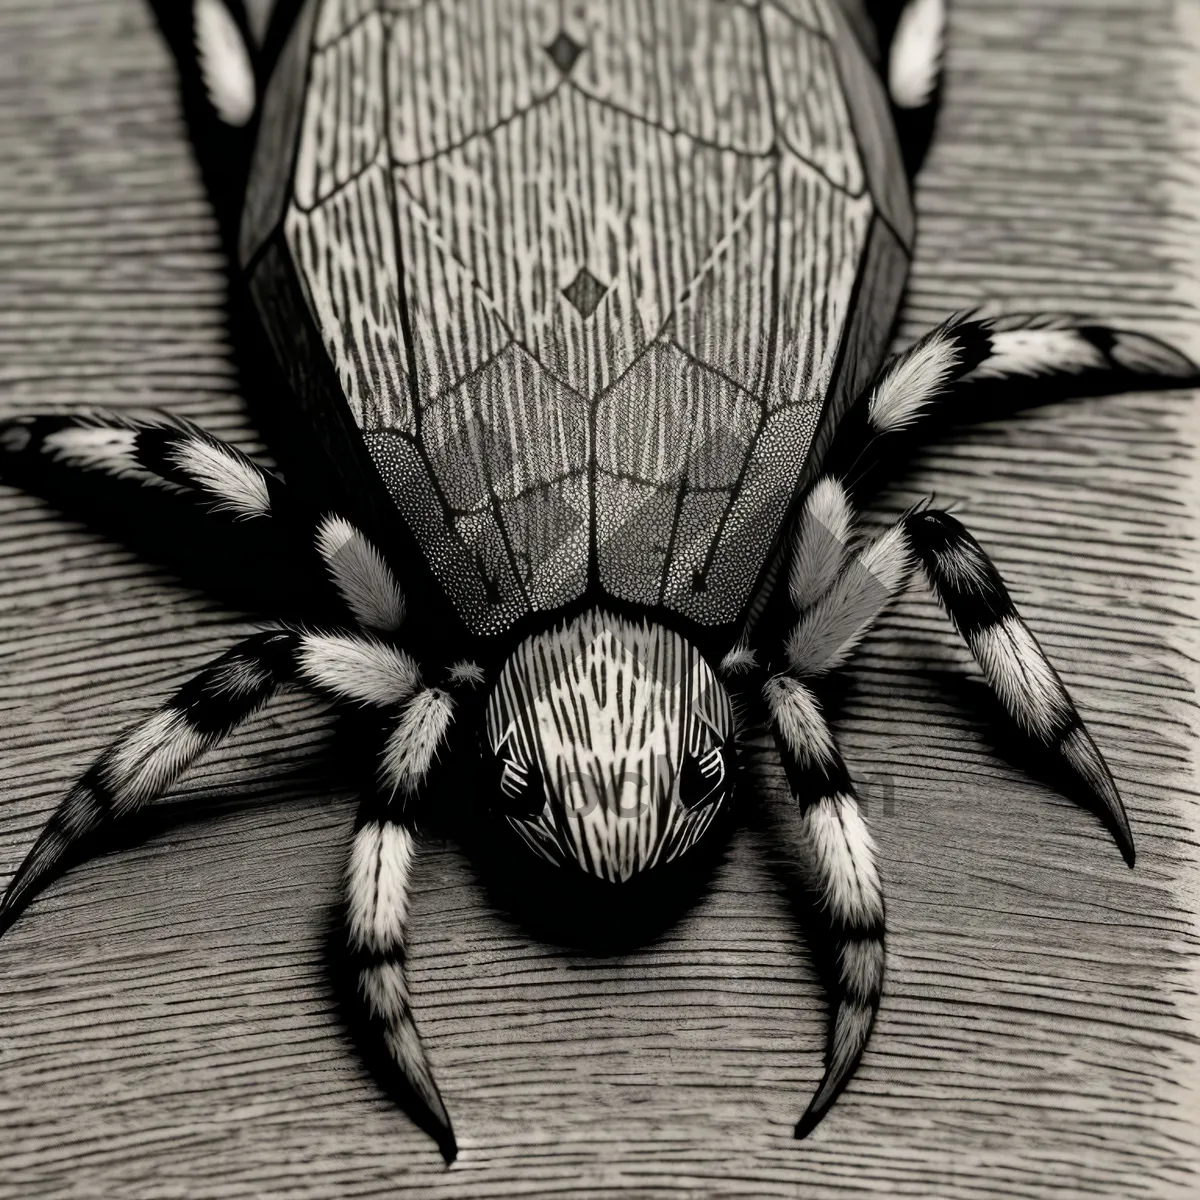 Picture of Garden Spider Close-Up: Fascinating Arachnid Invertebrate